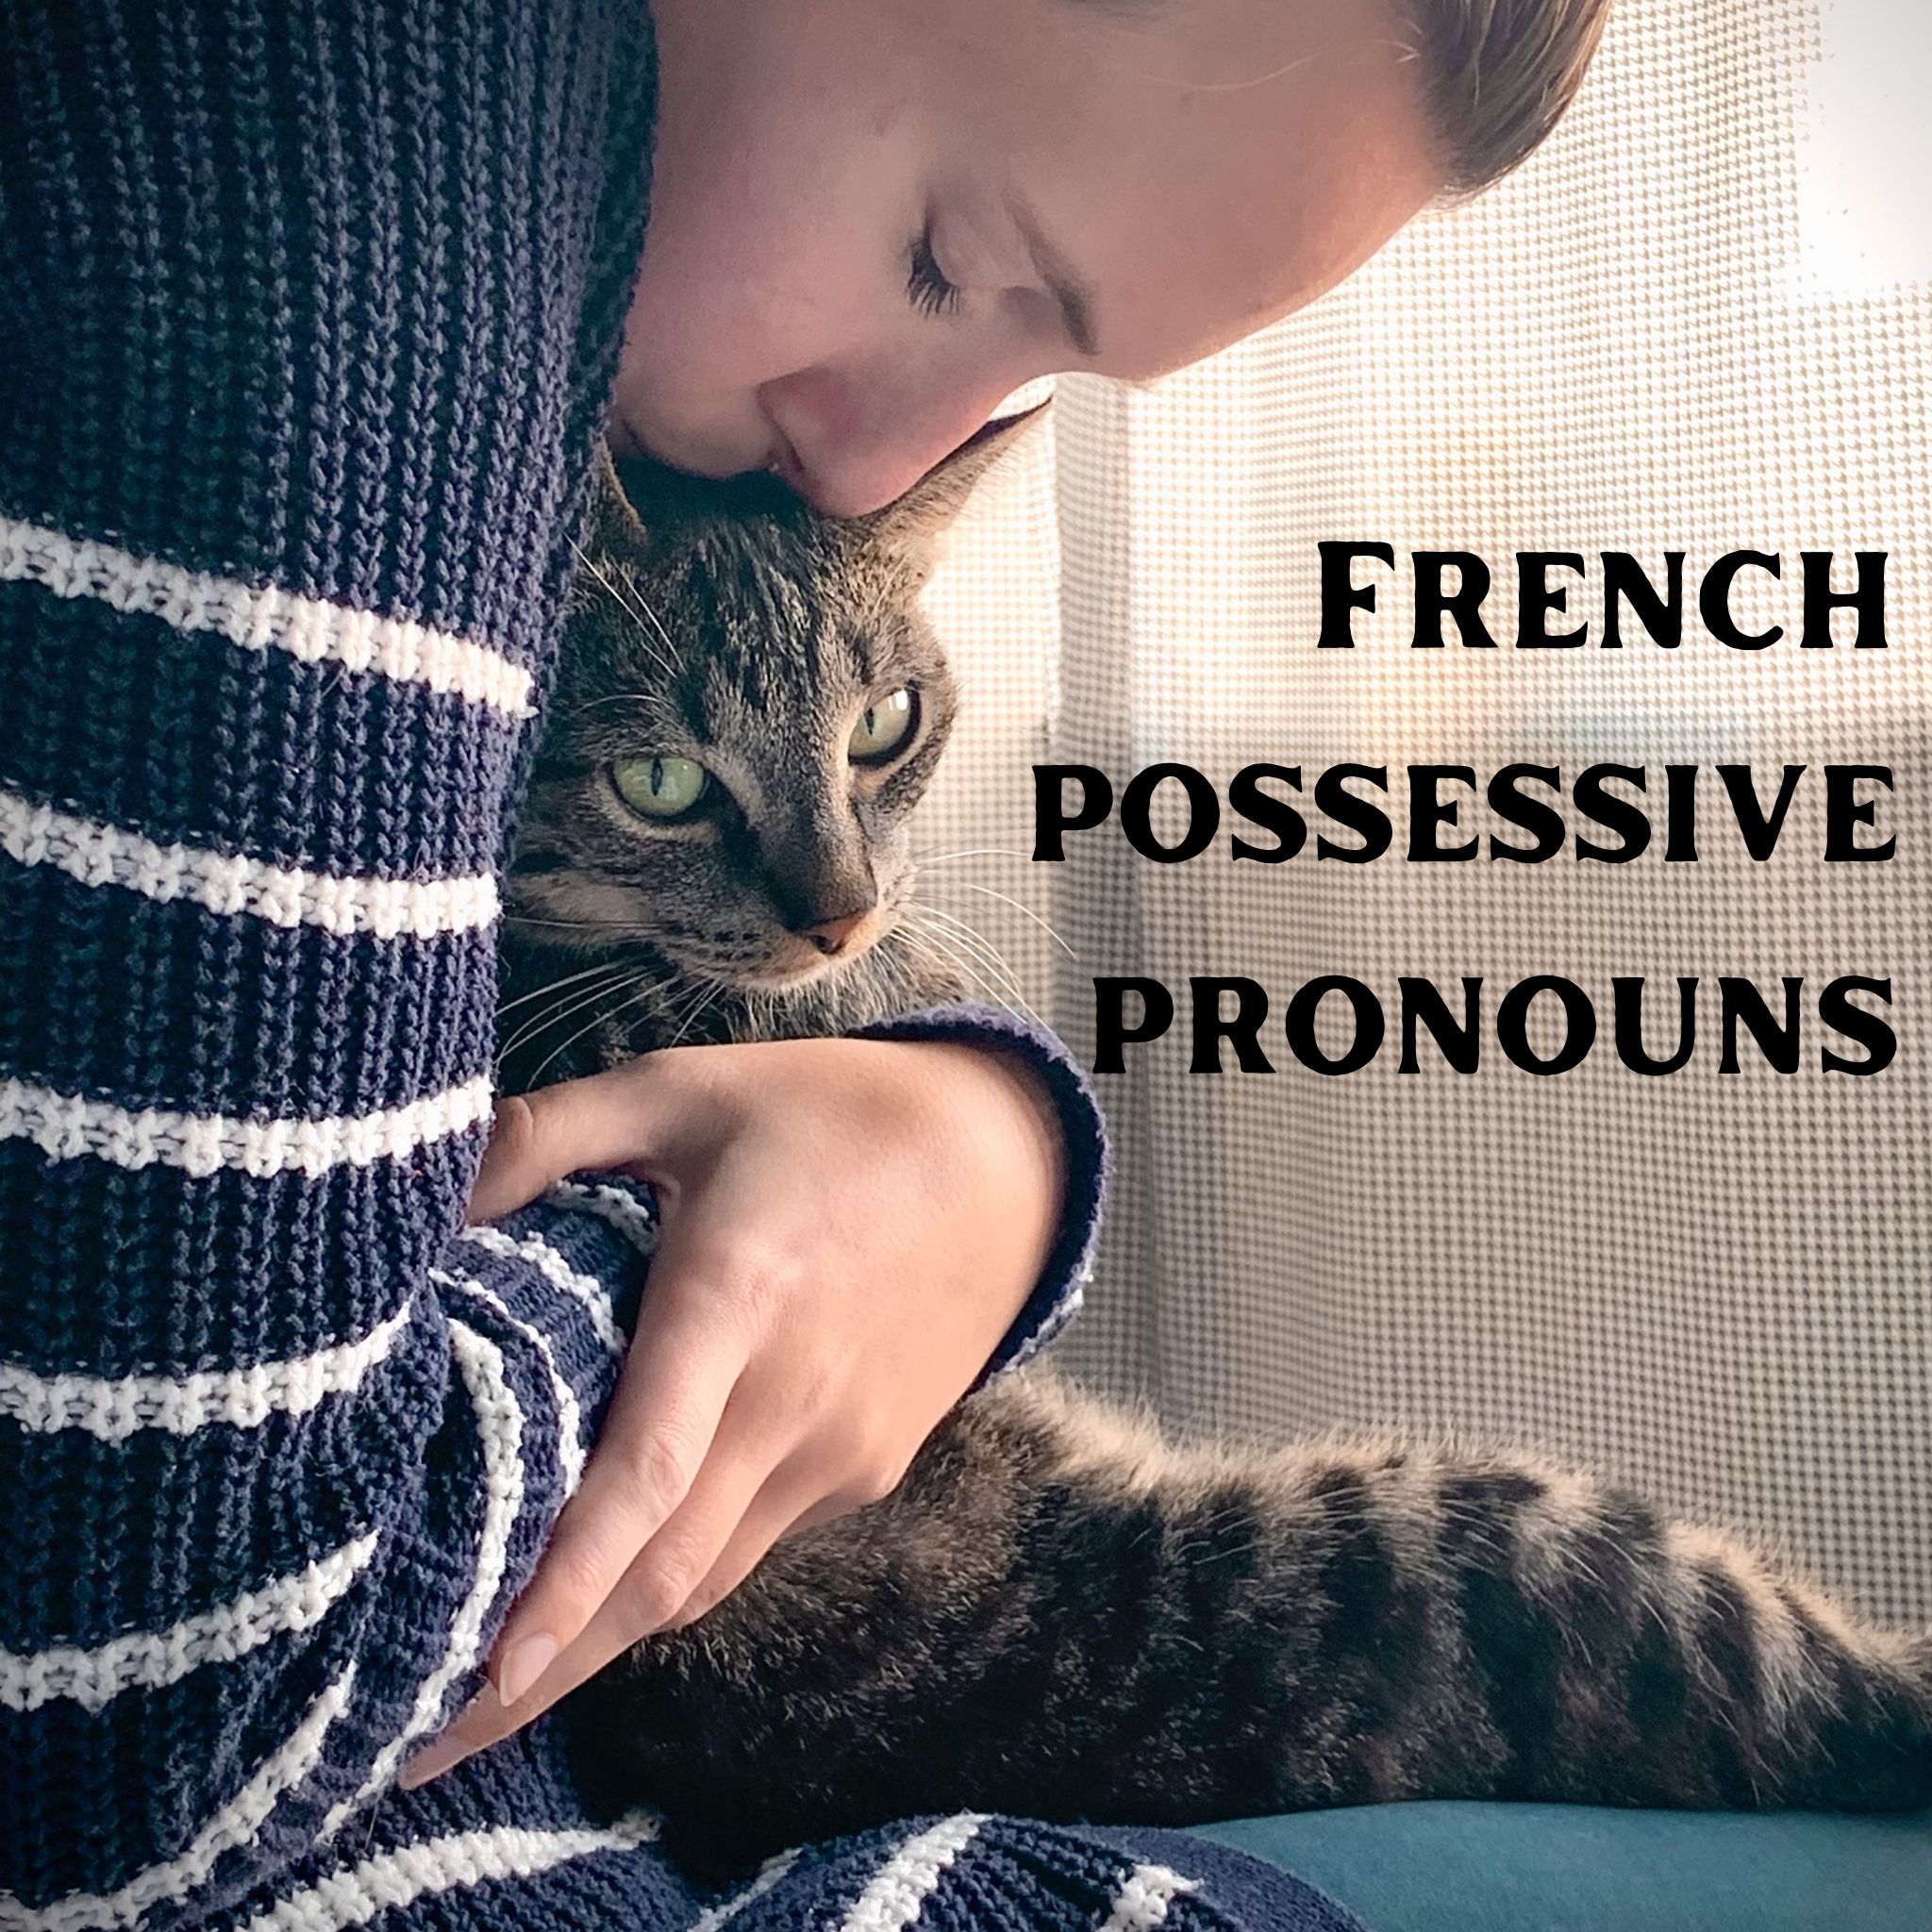 french-possessive-pronouns-pdf-possessive-pronoun-possessives-education